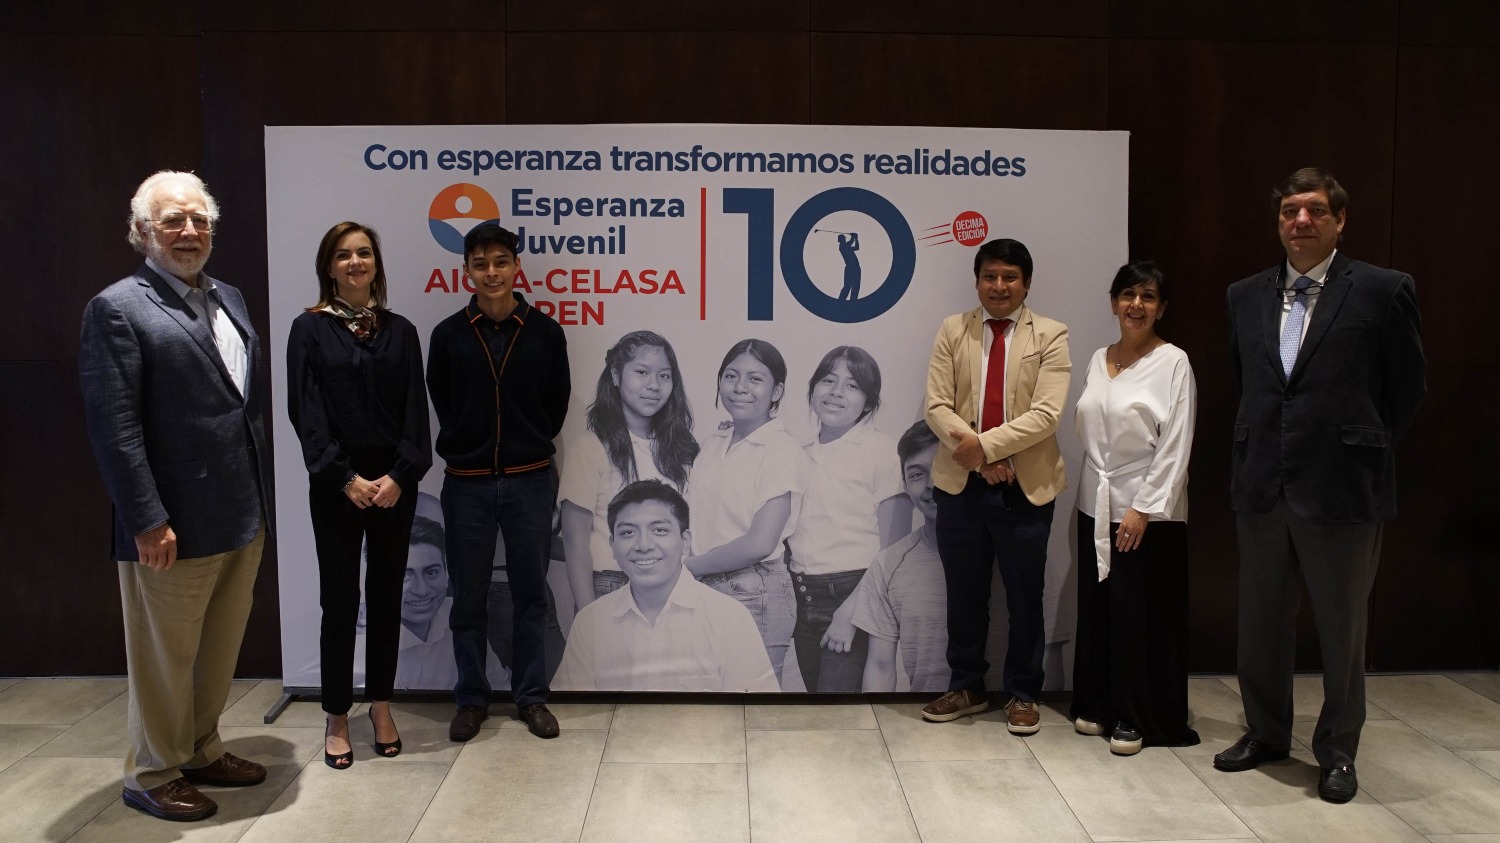 10mo Torneo Esperanza Juvenil/AICSA-CELASA Open recaudará fondos para la educación de jóvenes guatemaltecos